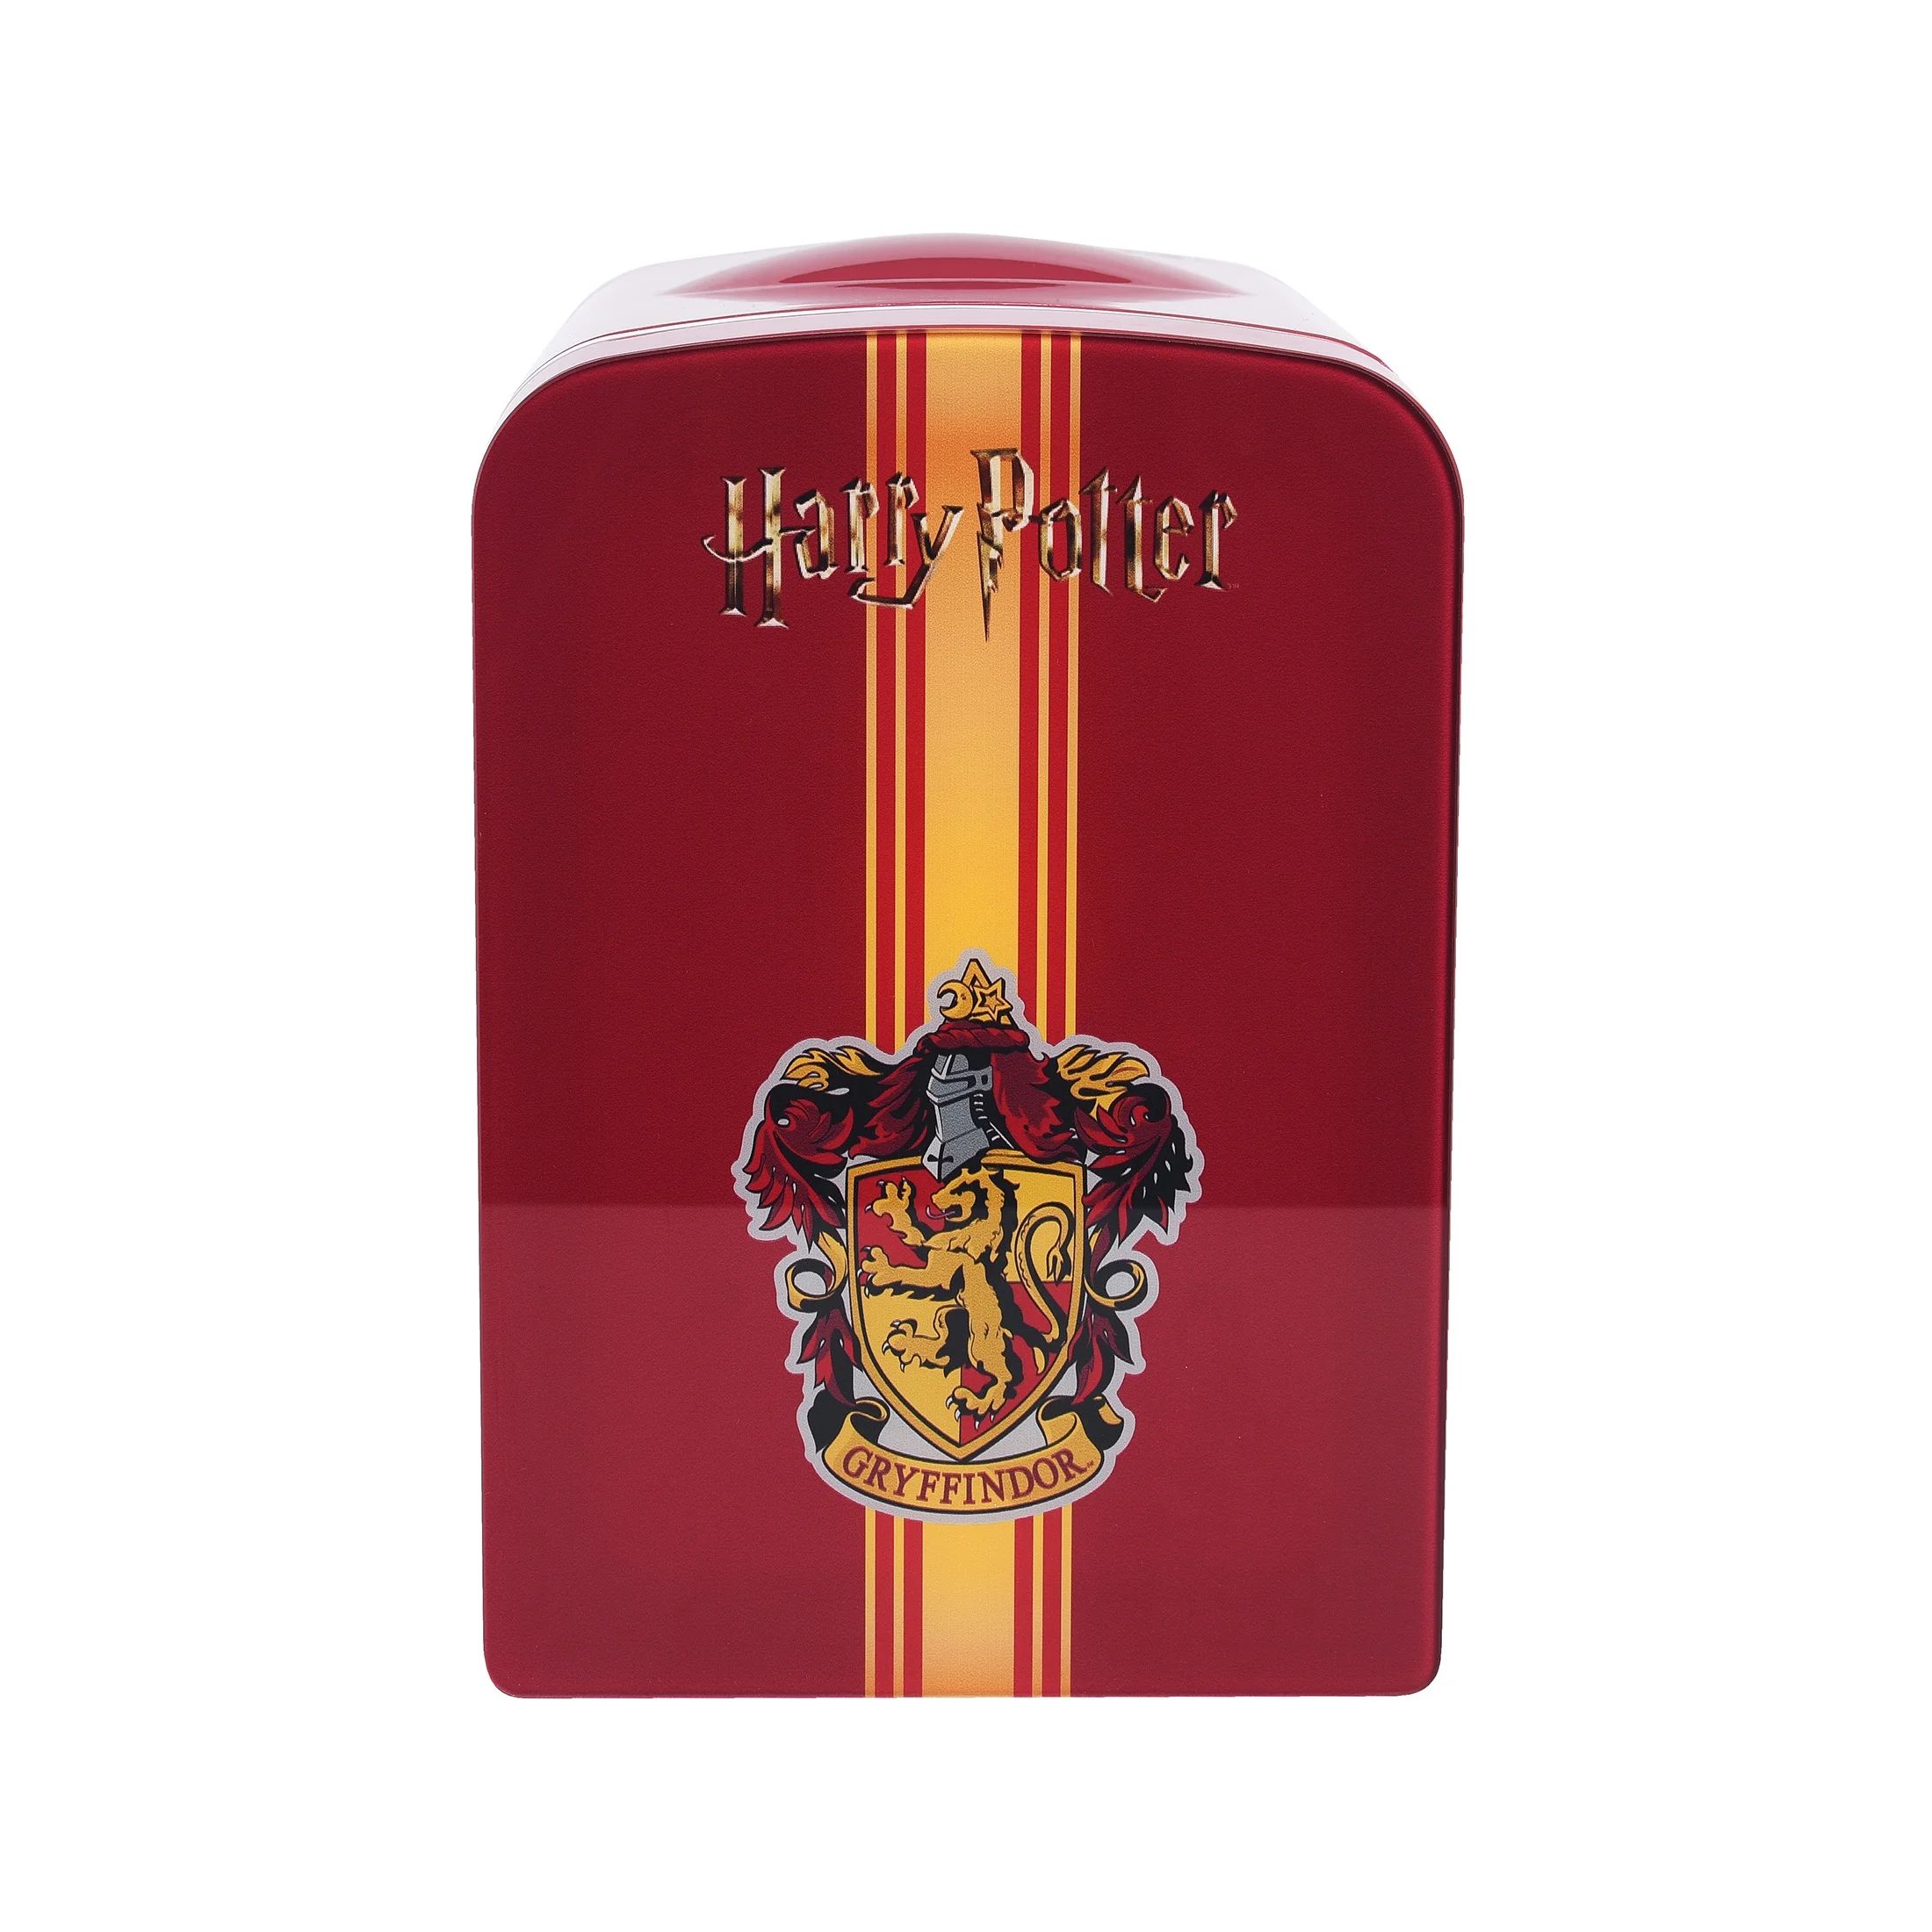 Harry Potter Red Gryffindor 4L 6 Can Cooler Mini Fridge | Walmart (US)